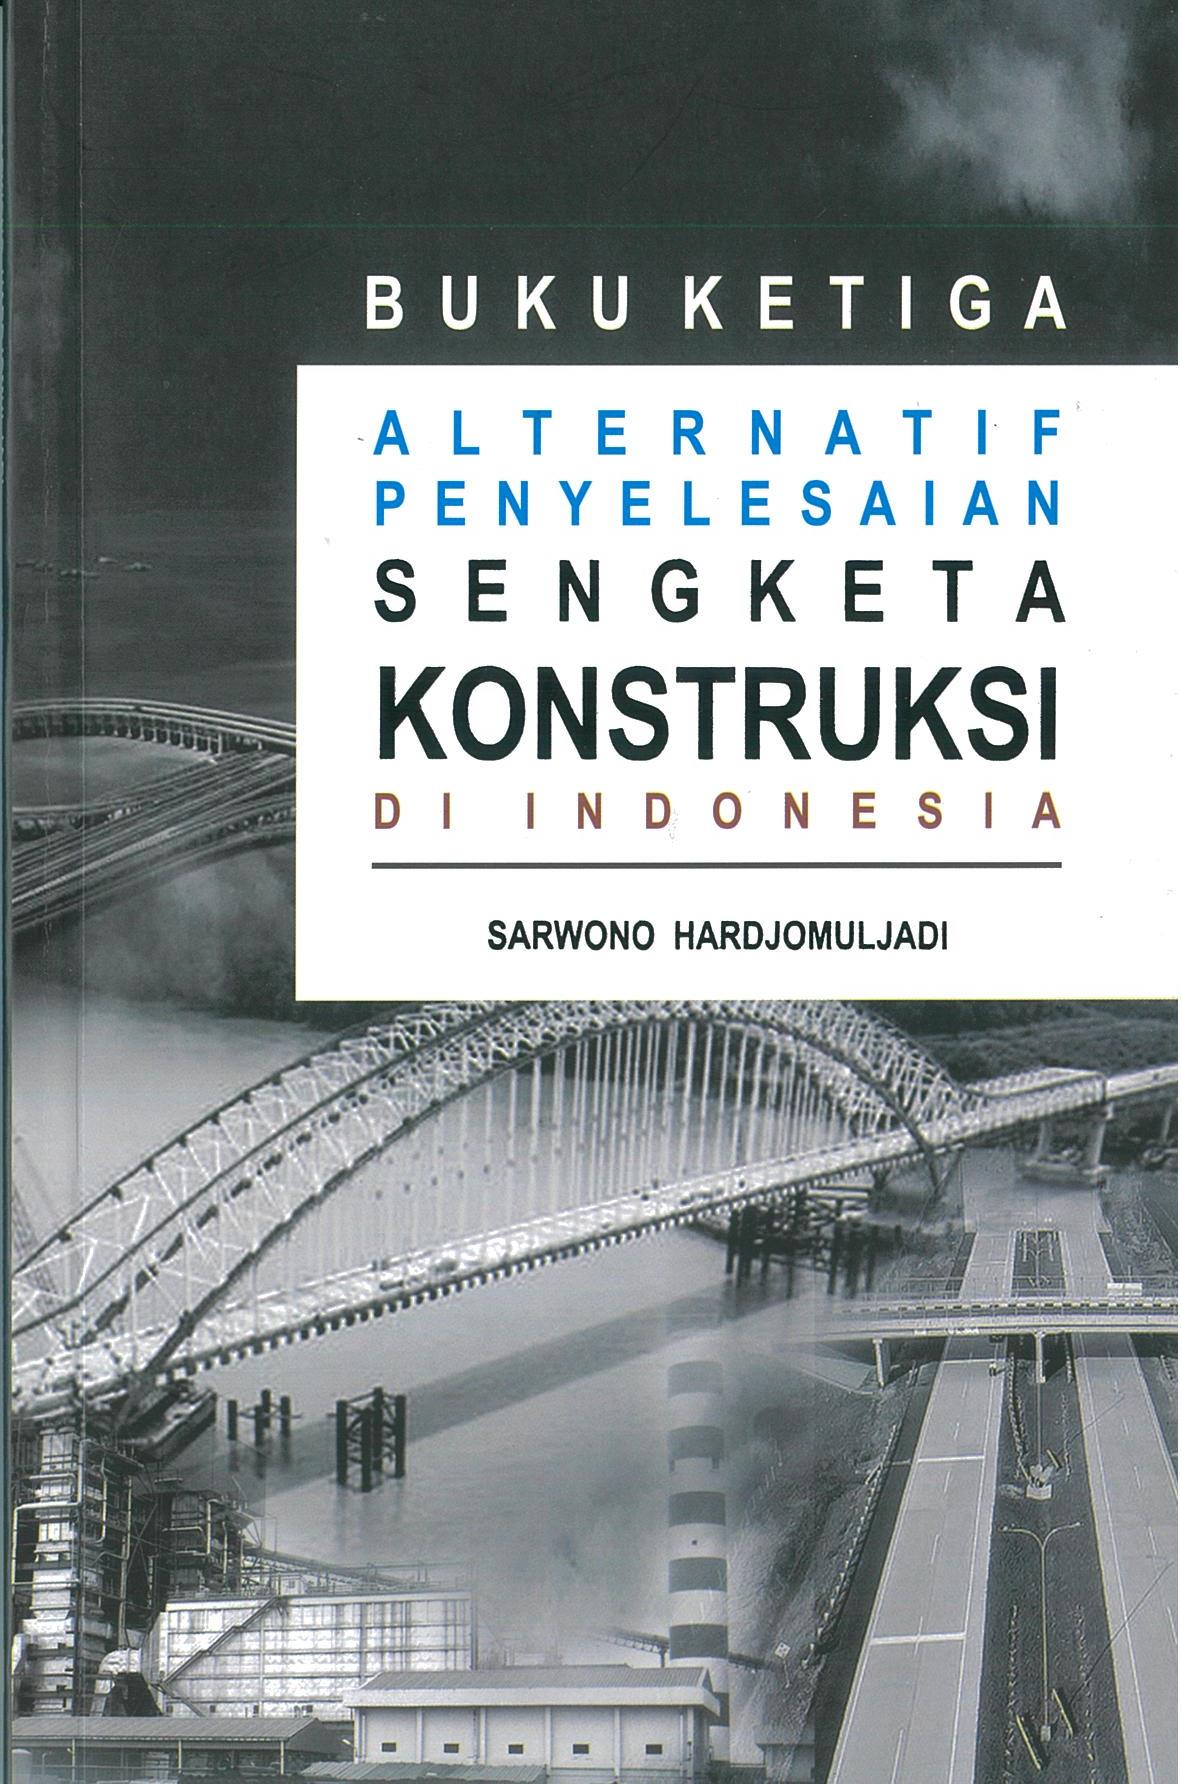 Alternatif penyelesaian sengketa konstruksi di indonesia : buku ketiga